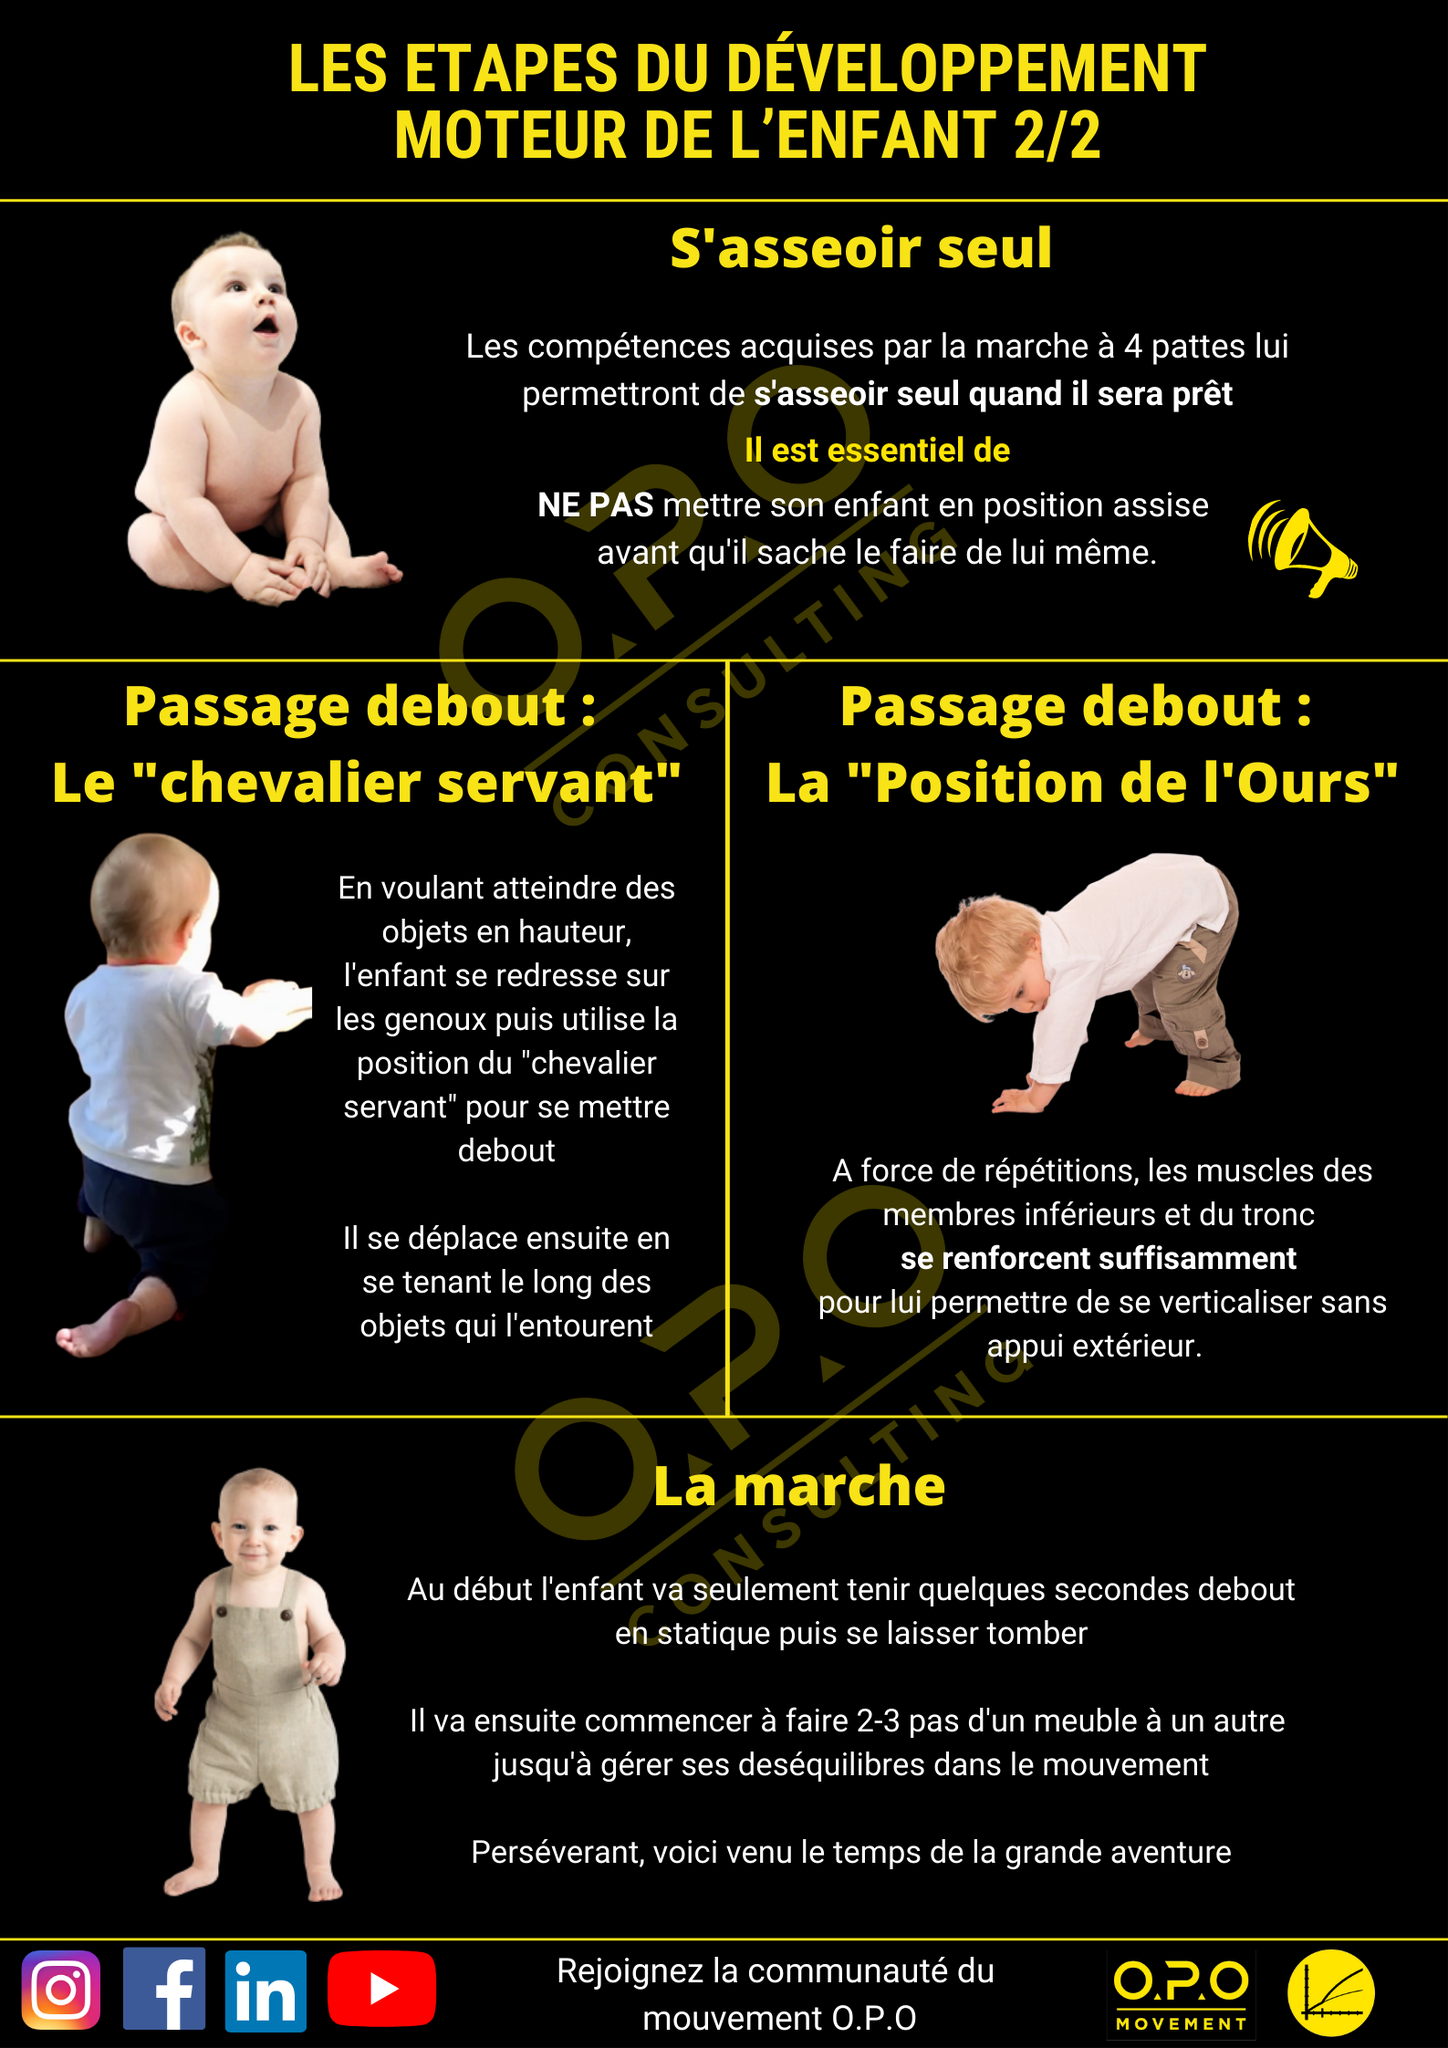 Les étapes clés du développement de la motricité du bébé